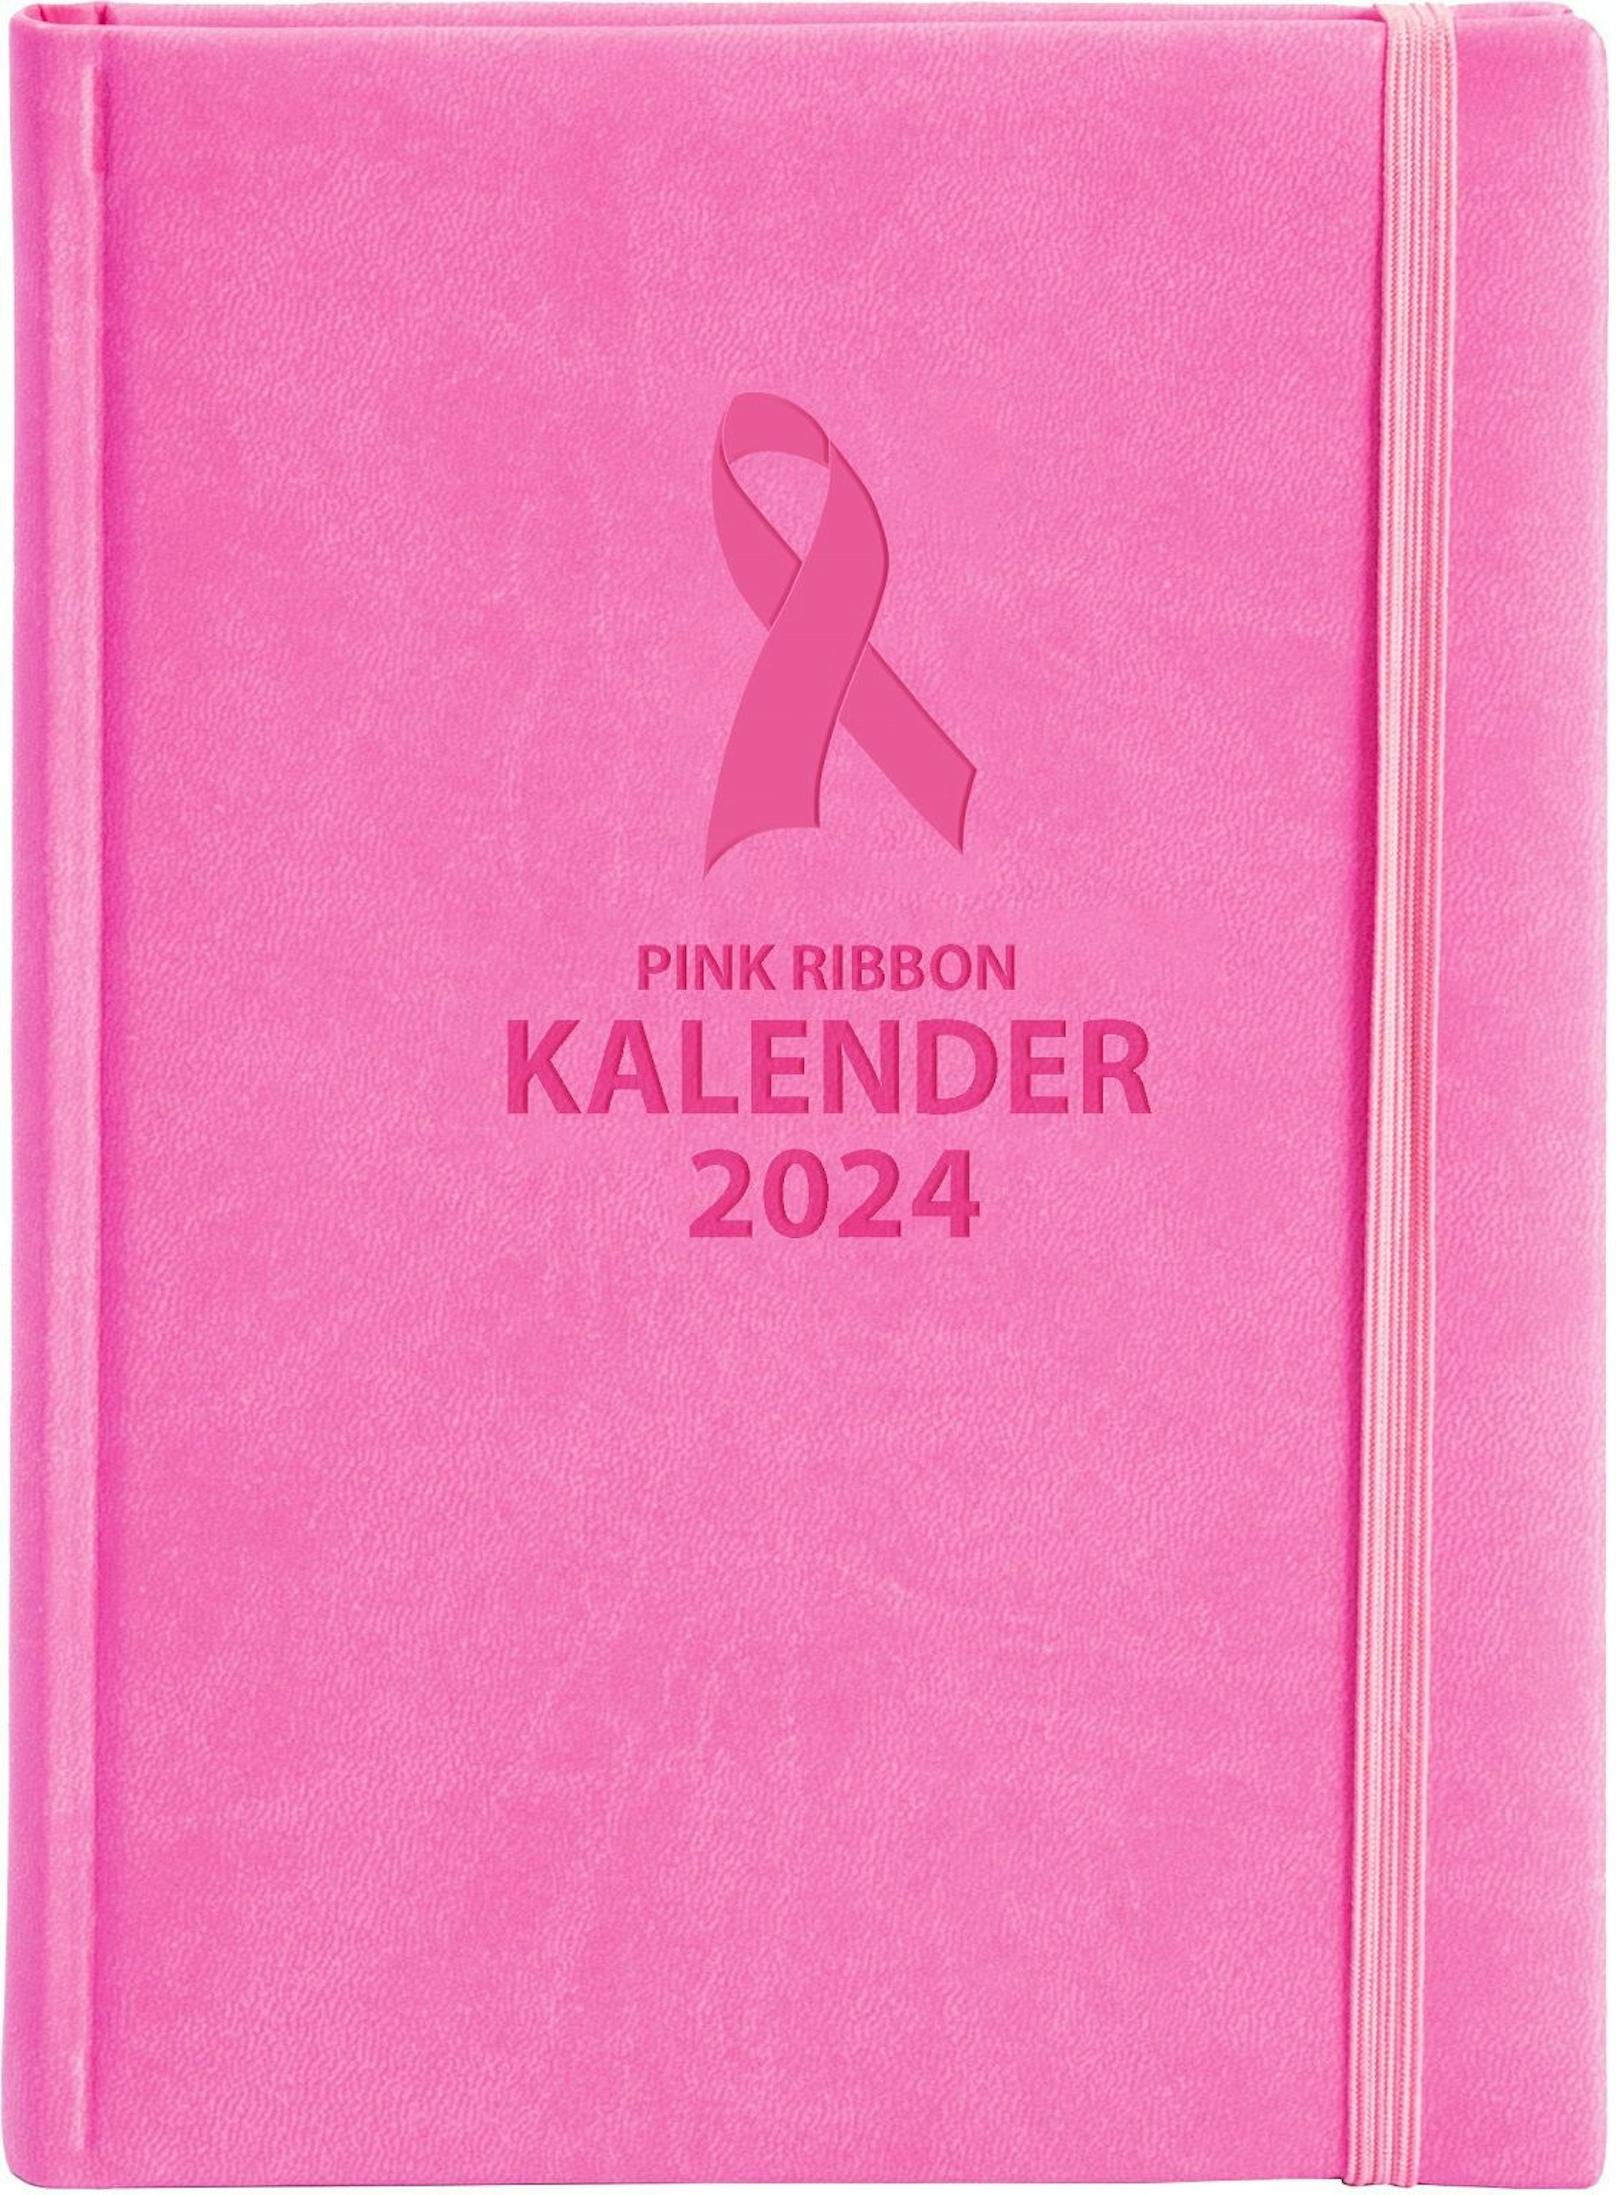 Eine Besonderheit und exklusiv bei HOFER erhältlich: Der heiß begehrte "Pink Ribbon Kalender 2024" der Österreichischen Krebshilfe, dessen Signalfarbe für die Initiative spricht - bestehend aus Doppelseiten in der 7-Tagesansicht sowie zahlreichen Informationen rund um das Thema Brustkrebs und die Pink Ribbon-Aktion.